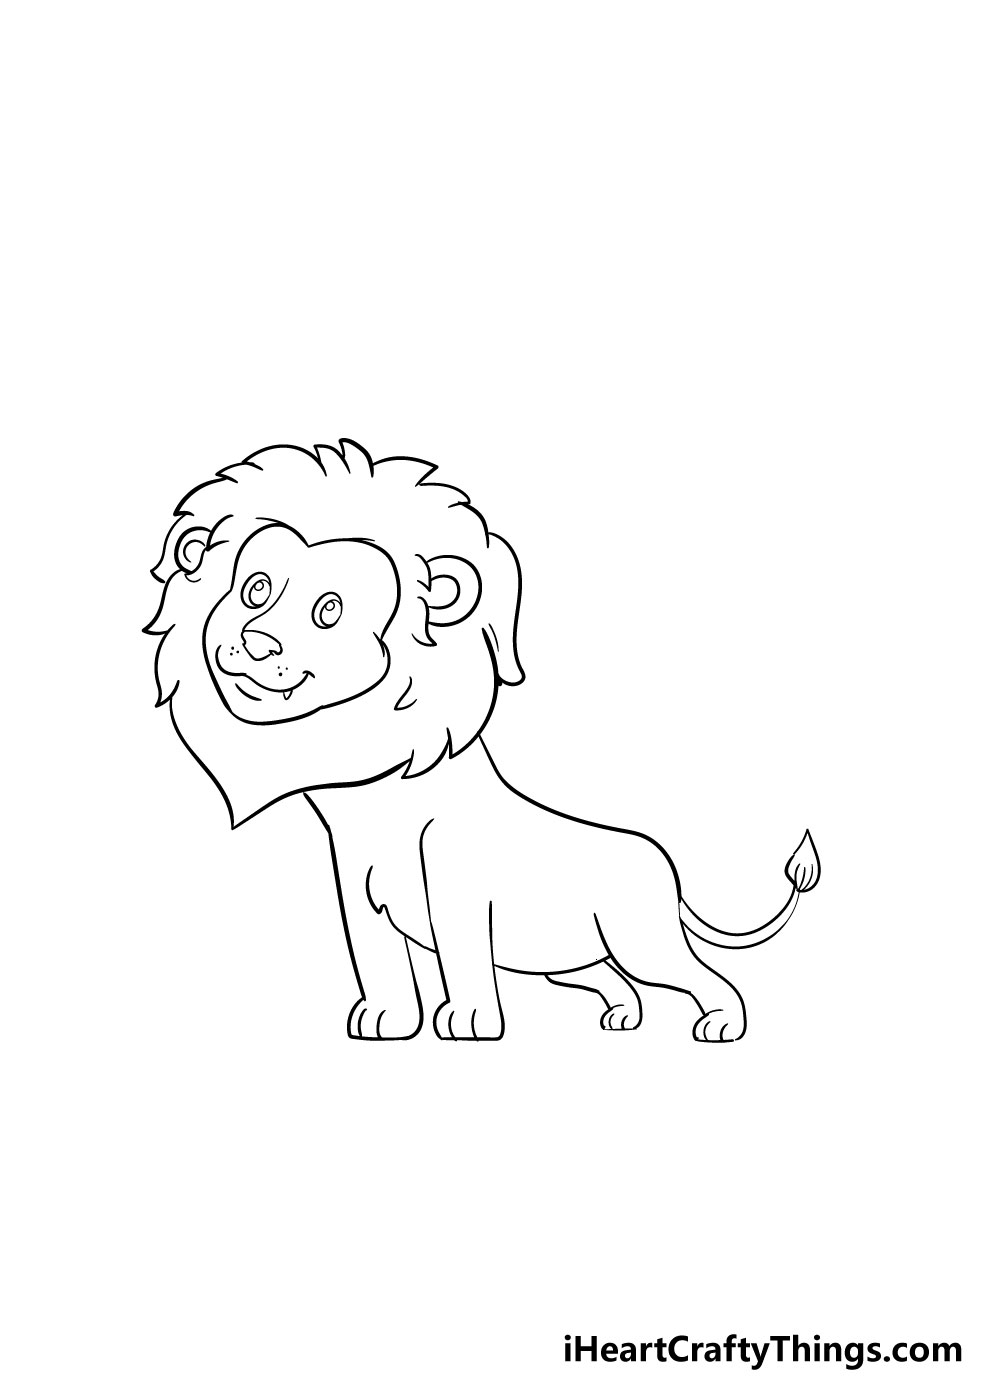 How to draw a lion 7 - Hướng dẫn cách vẽ con sư tử đơn giản với 8 bước cơ bản